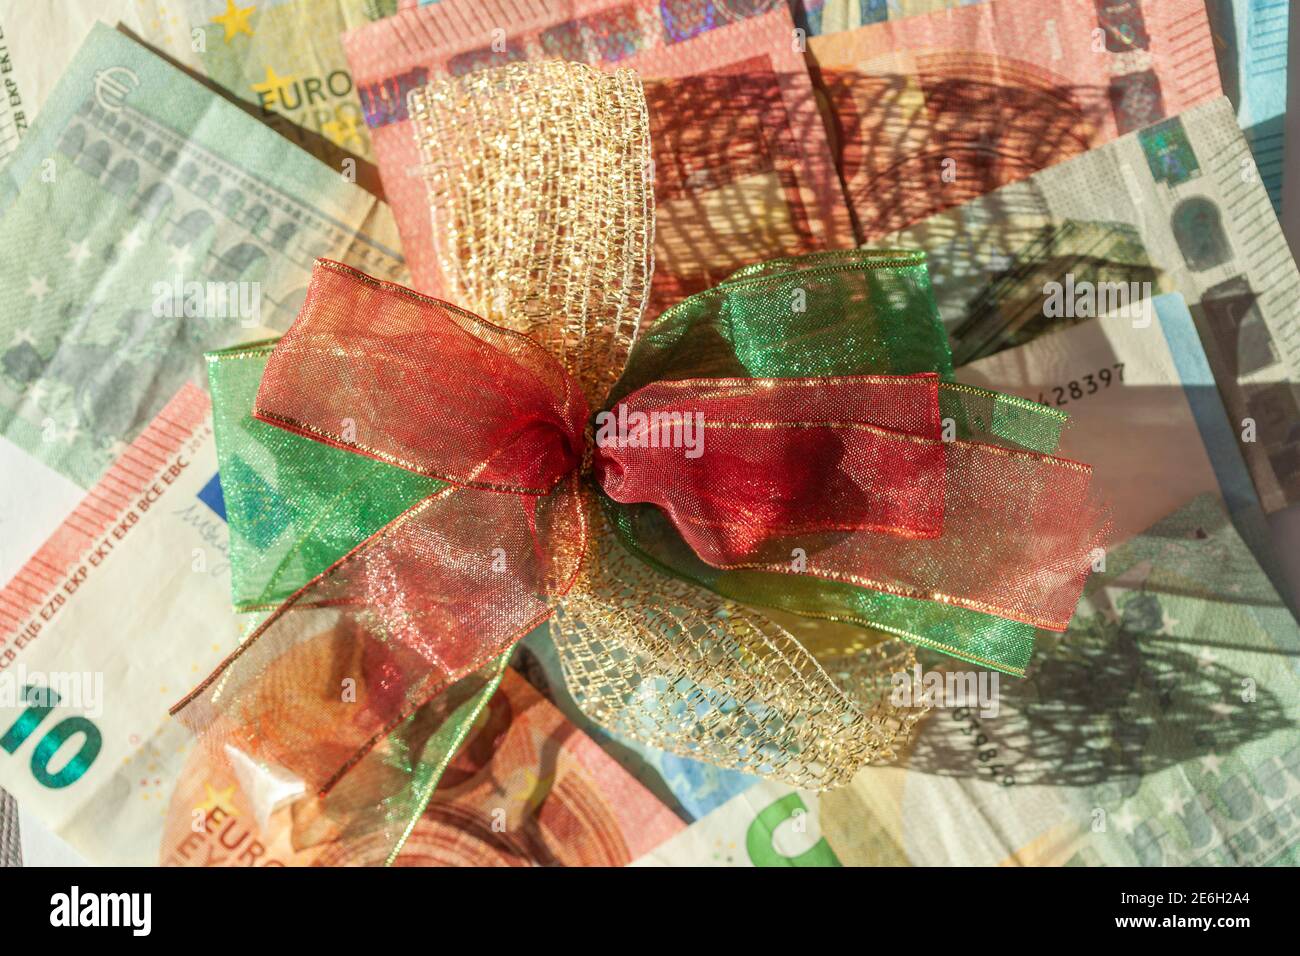 Euroscheine mit bunter Schleife als Geschenk Foto de stock